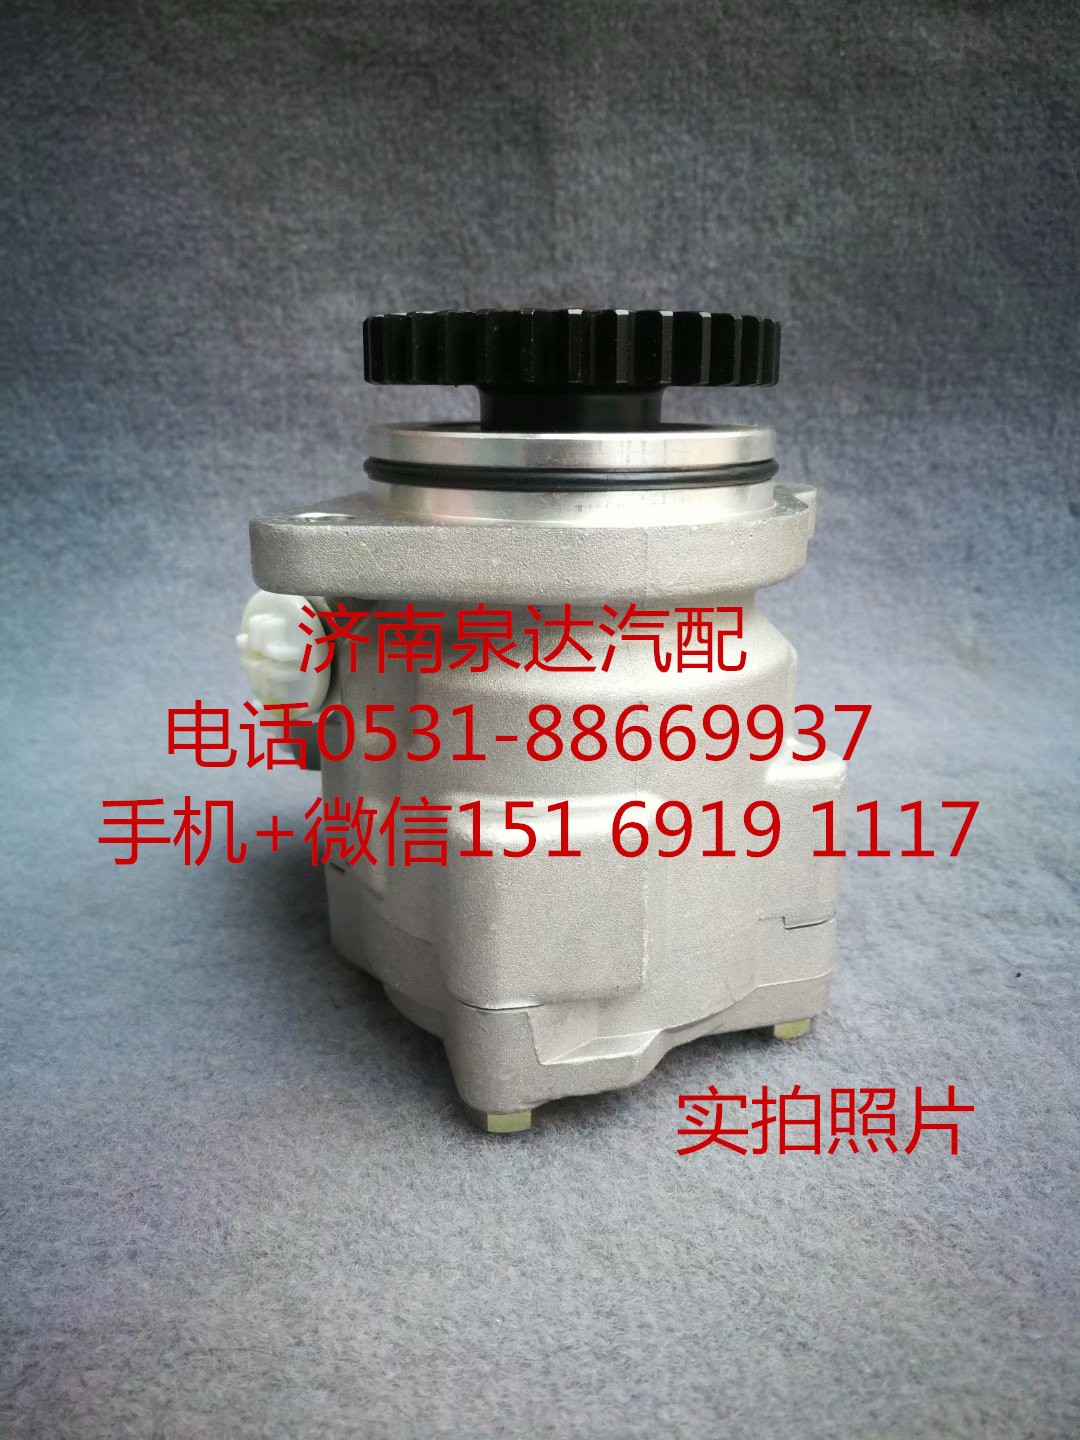 LG9704472030,转向助力泵,济南泉达汽配有限公司